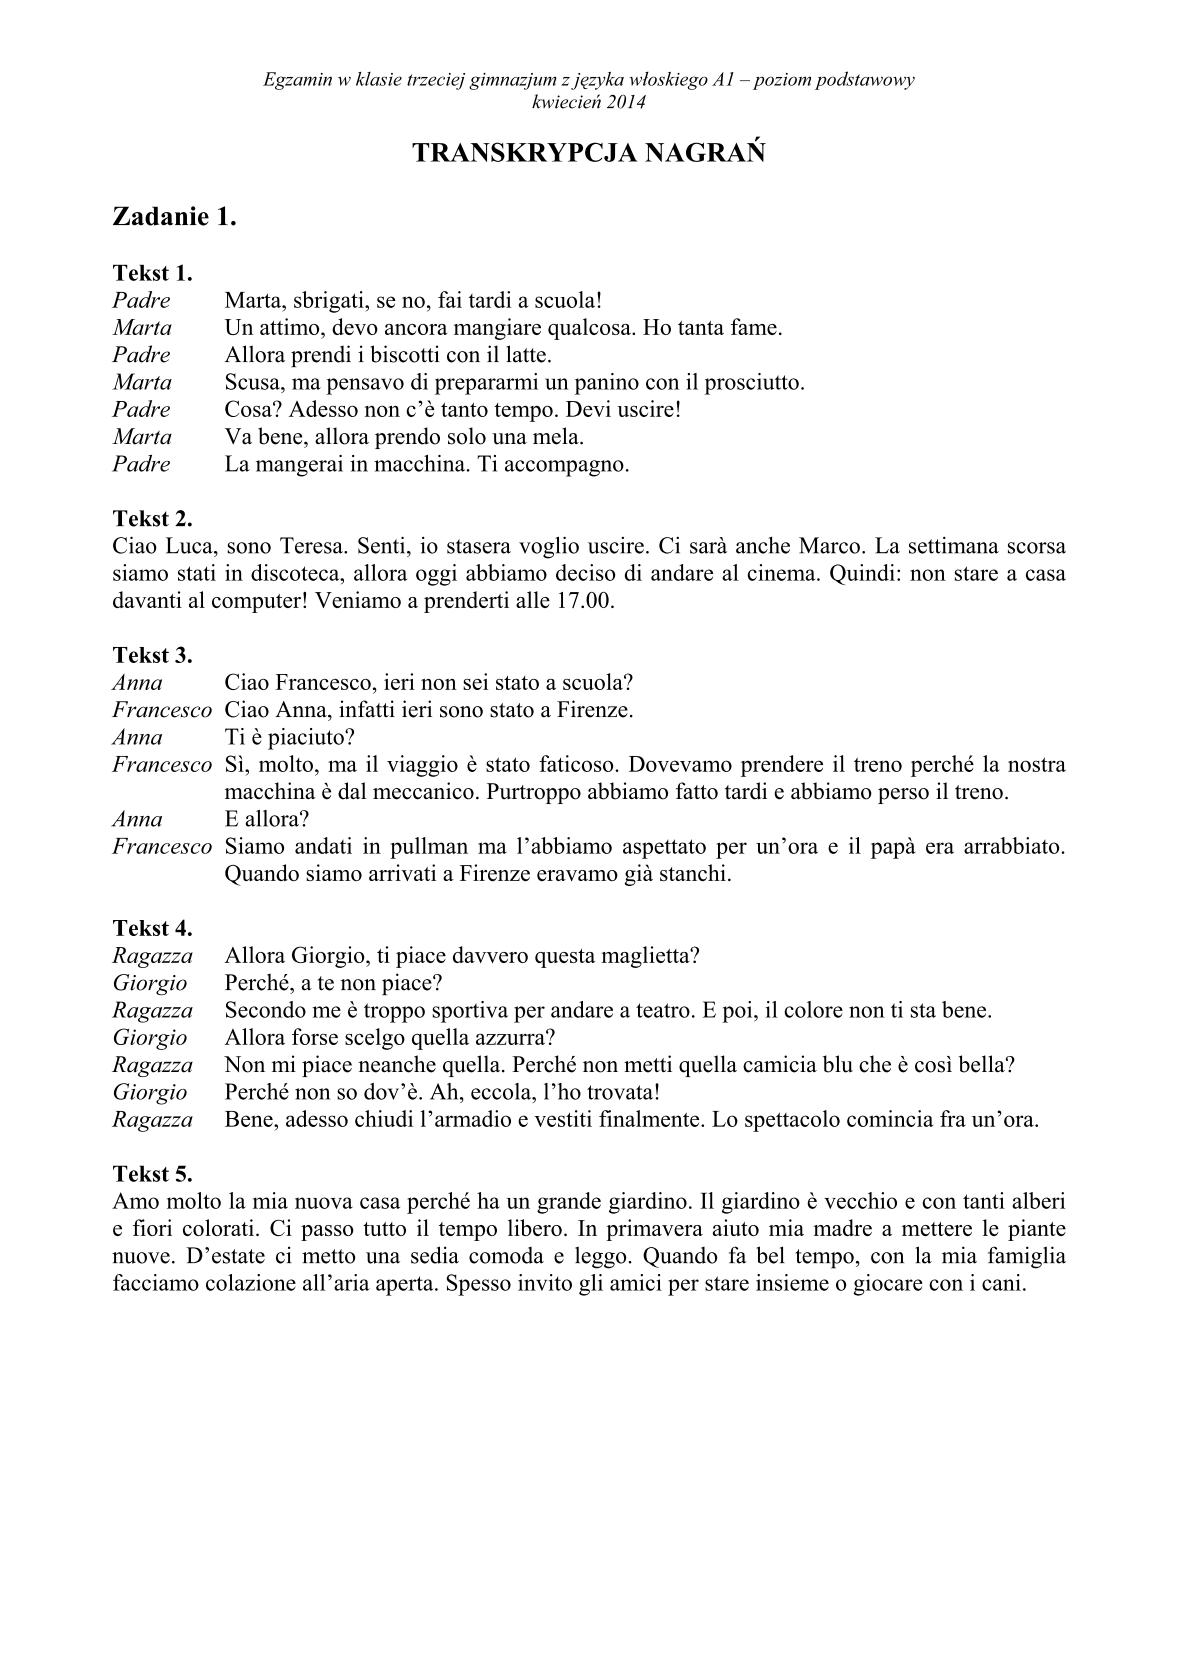 transkrypcja-wloski-poziom-podstawowy-egzamin-gimnazjalny-25.04.2014-13